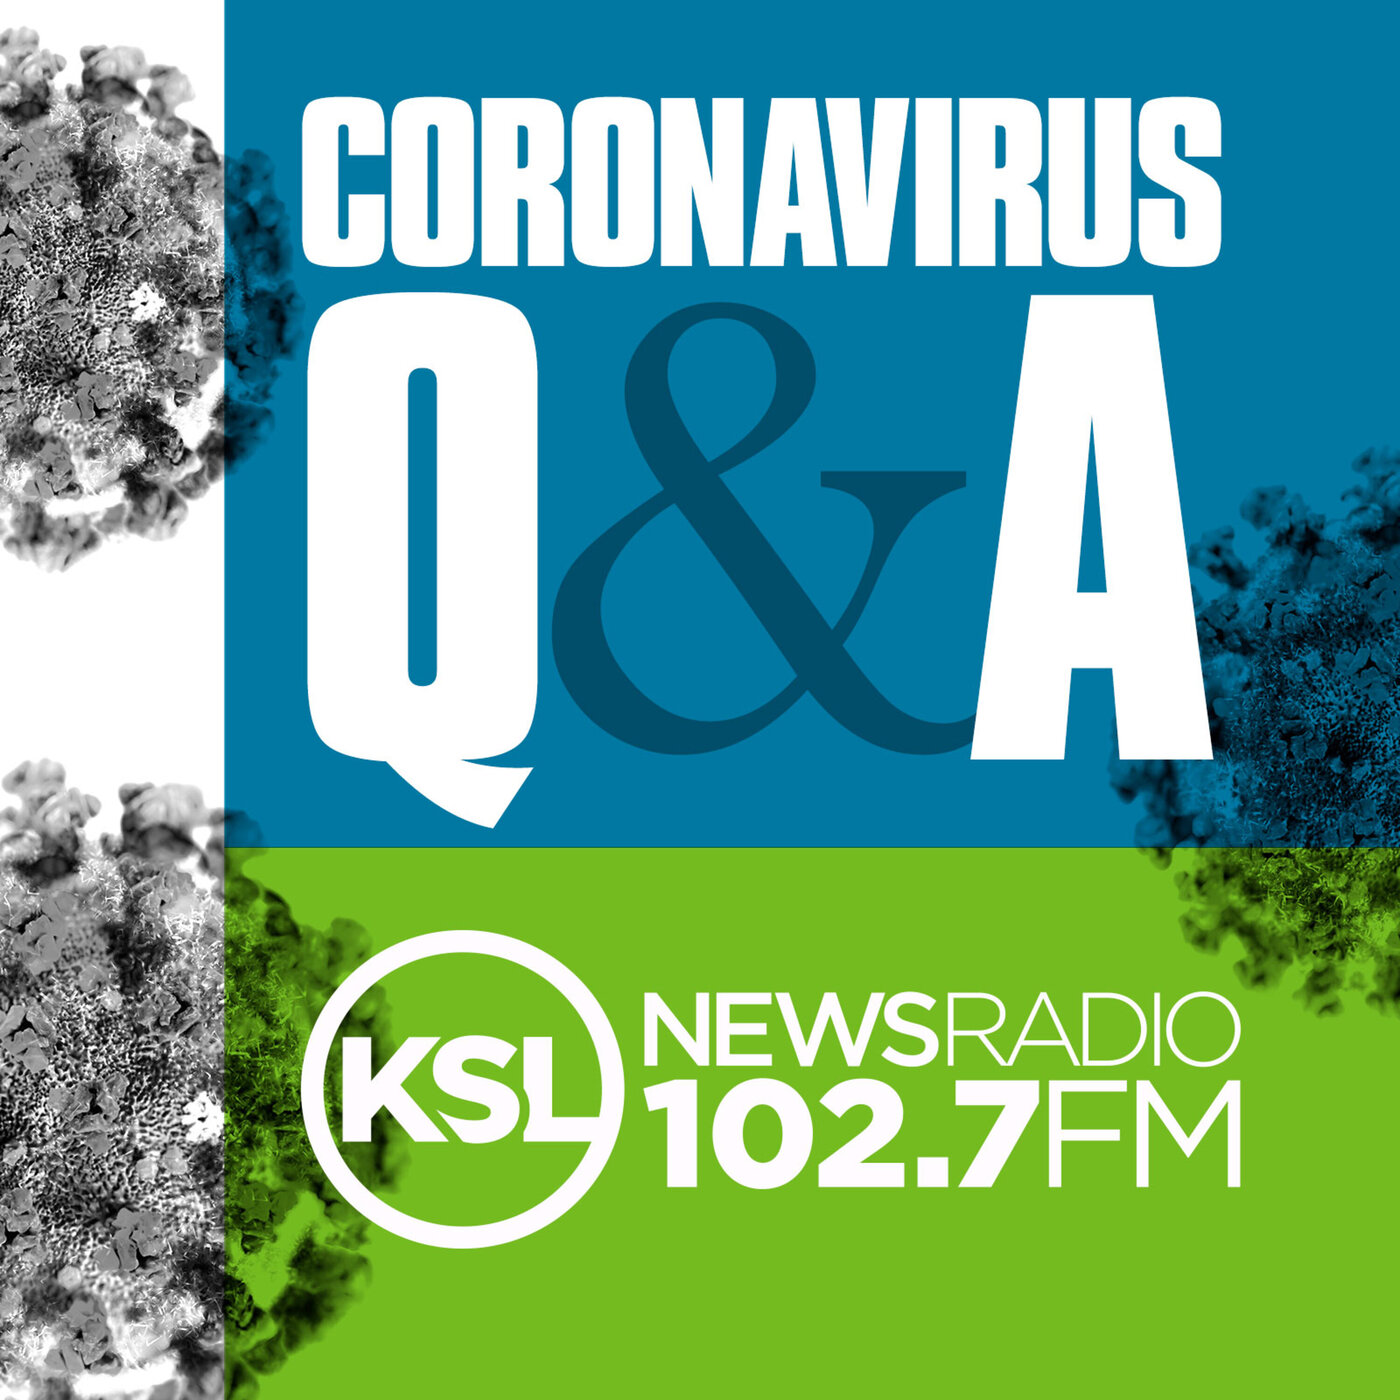 Coronavirus Update November 30th